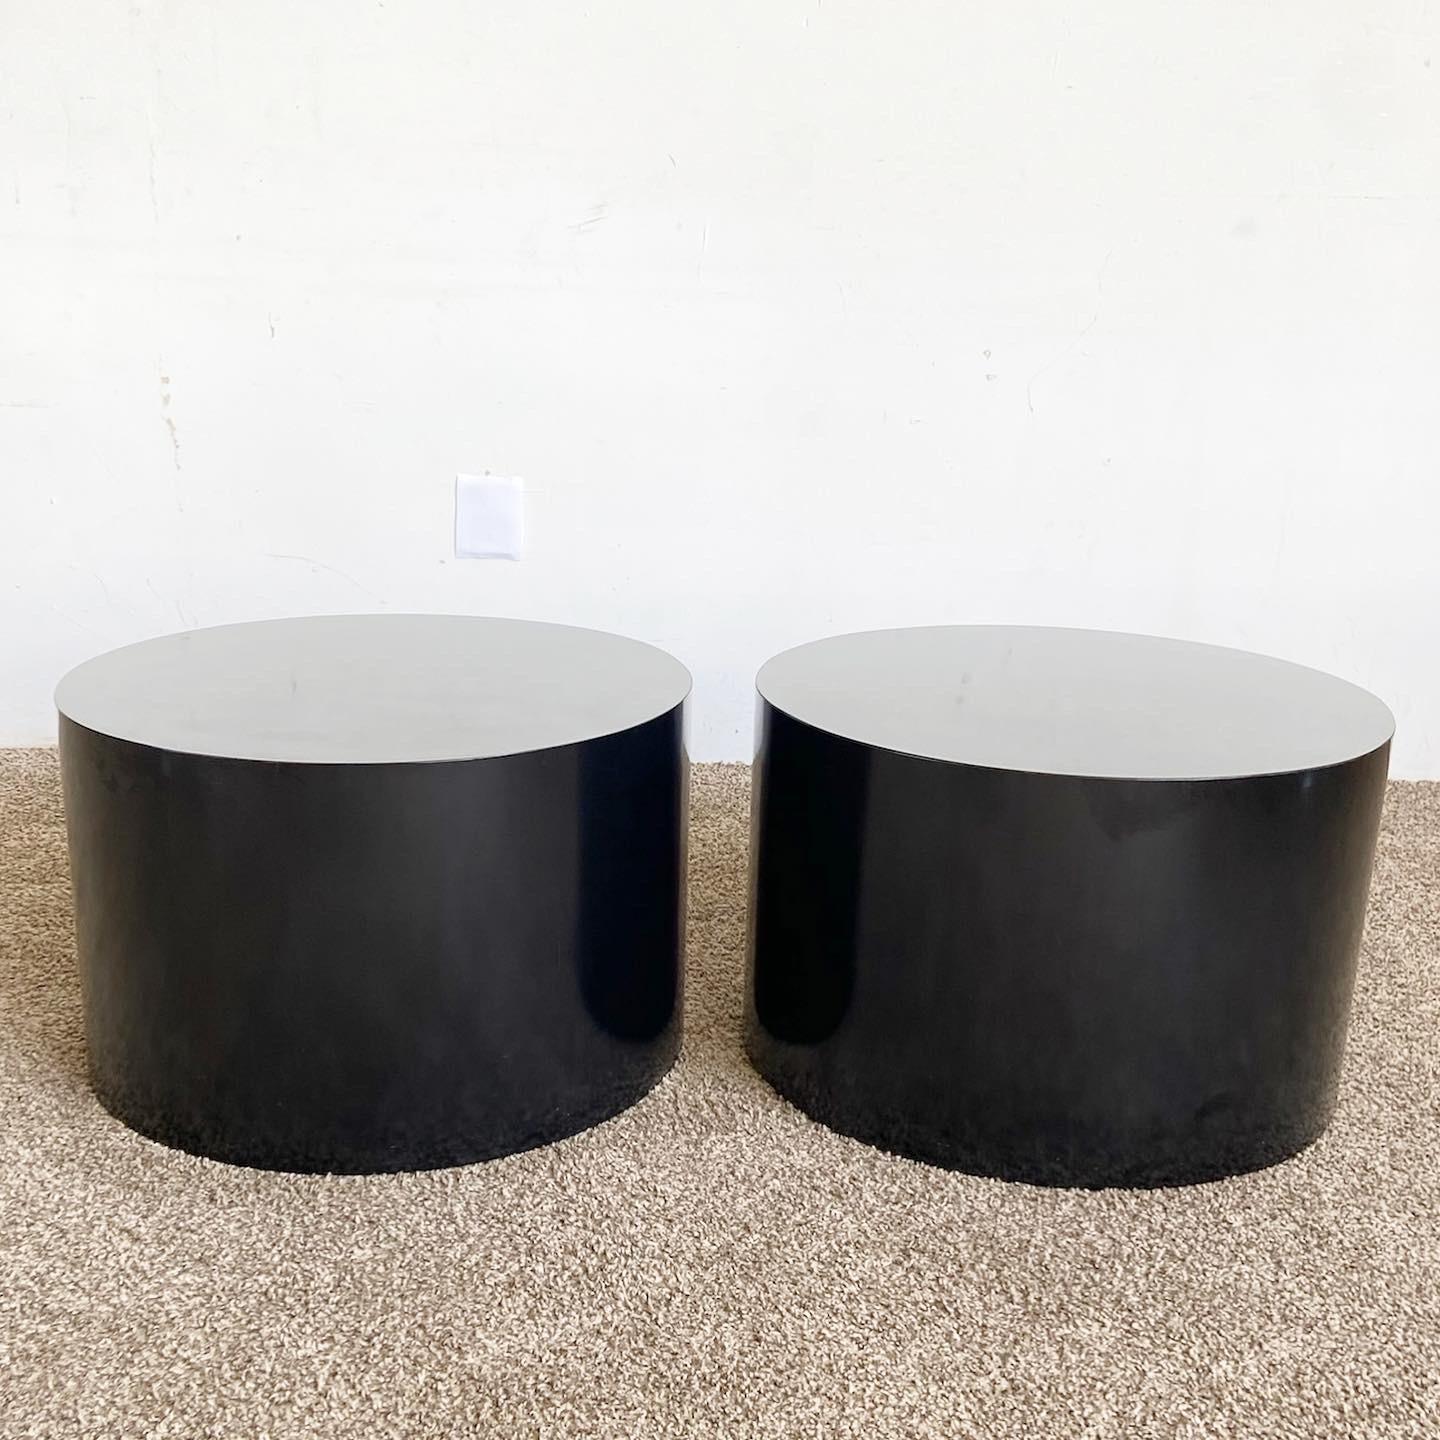 Nos tables d'appoint Postmodern Black Lacquer Laminate Drum constituent un ajout élégant à toute maison, grâce à leur finition brillante et à leur forme unique de tambour.

La finition laquée noire du stratifié offre un attrait brillant.
La forme